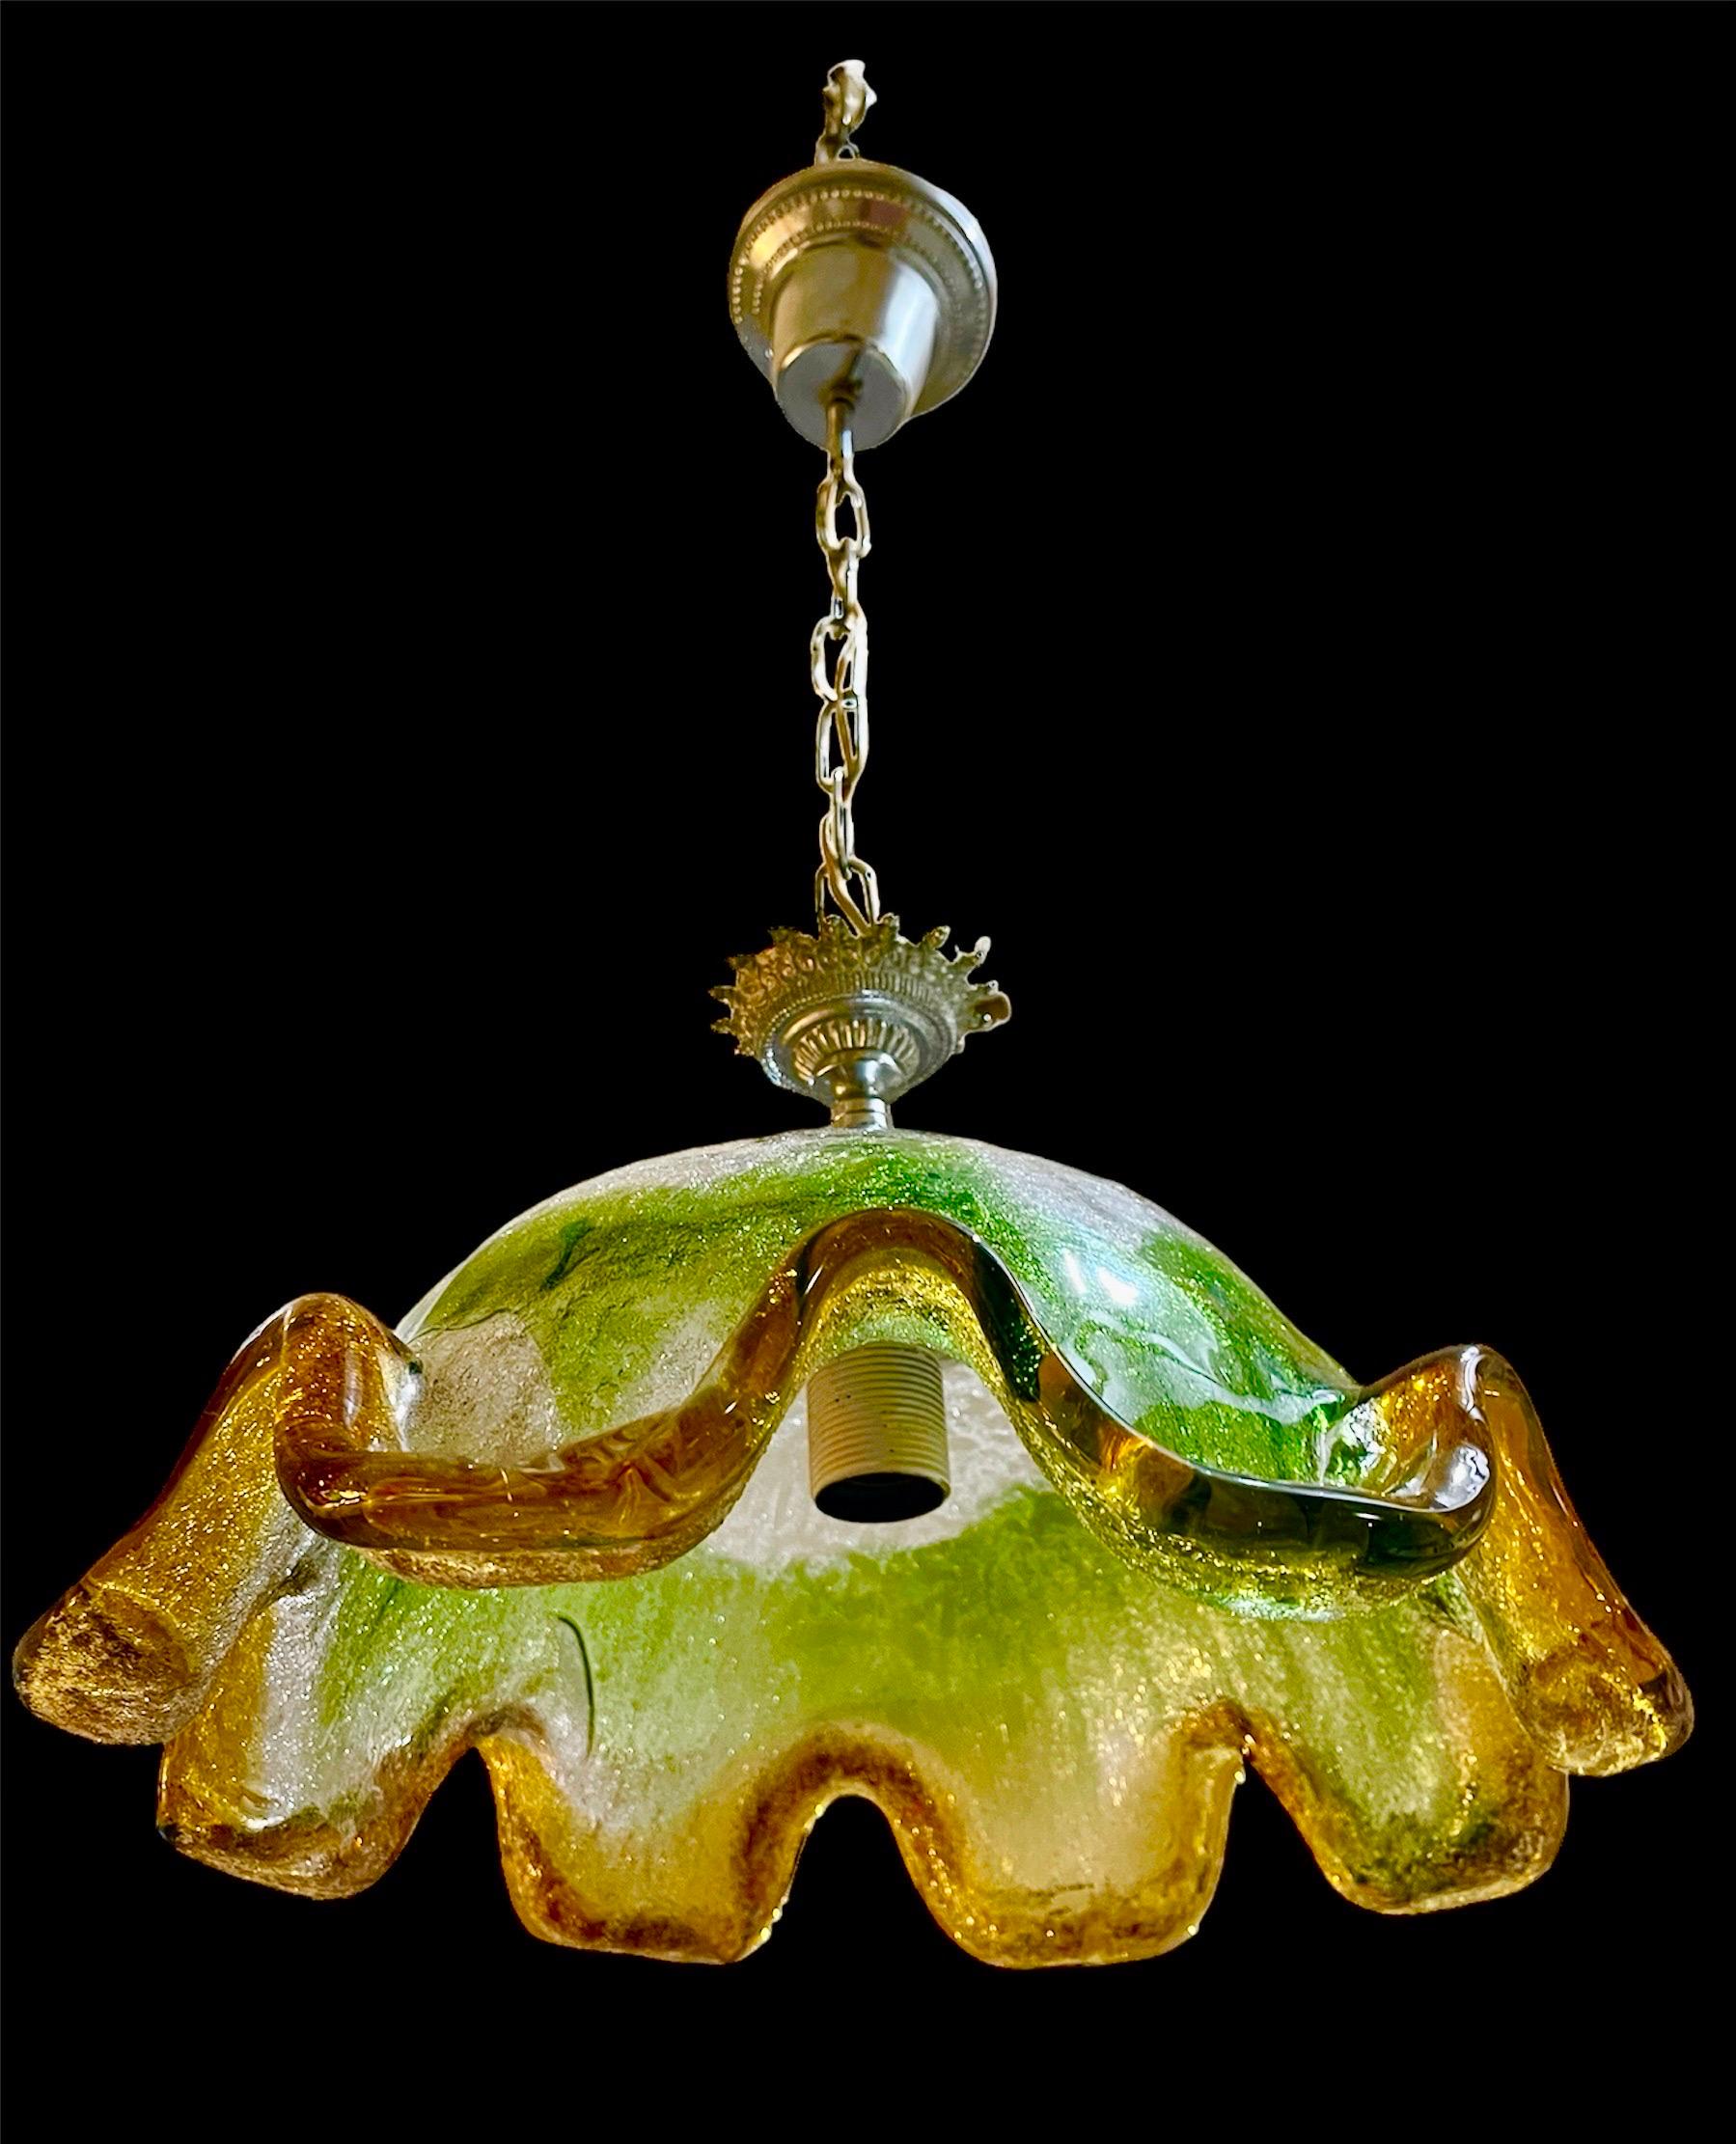 Exceptionnel pendentif Mazzega, multicolore en verre de Murano avec structure. Le design et la qualité du verre font de cette pièce le meilleur du design italien. Ce globe unique de Murano en verre de Murano est exceptionnel.

 Ce verre d'art